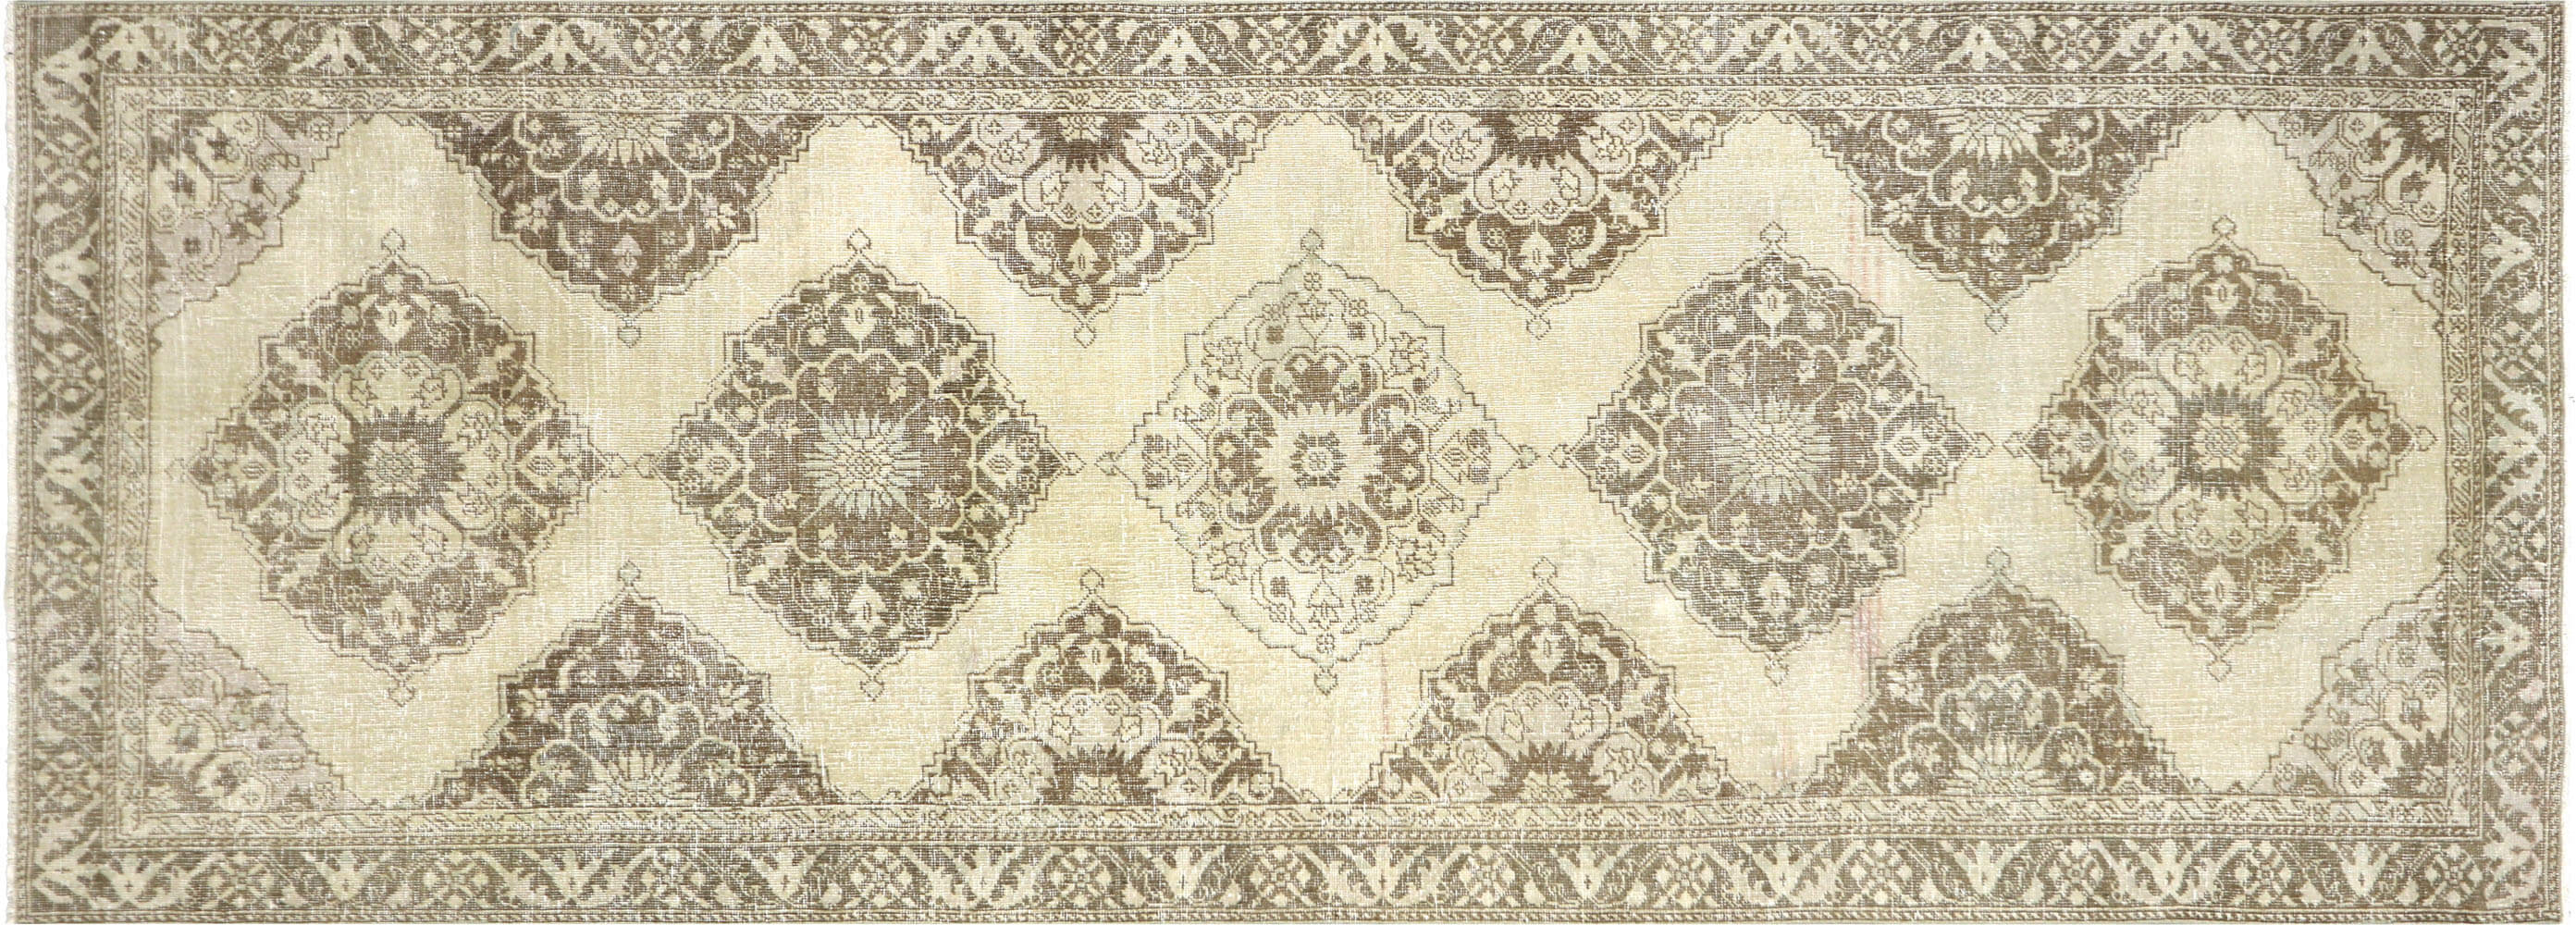 Vintage Turkish Oushak Carpet - 4'8" x 12'8"